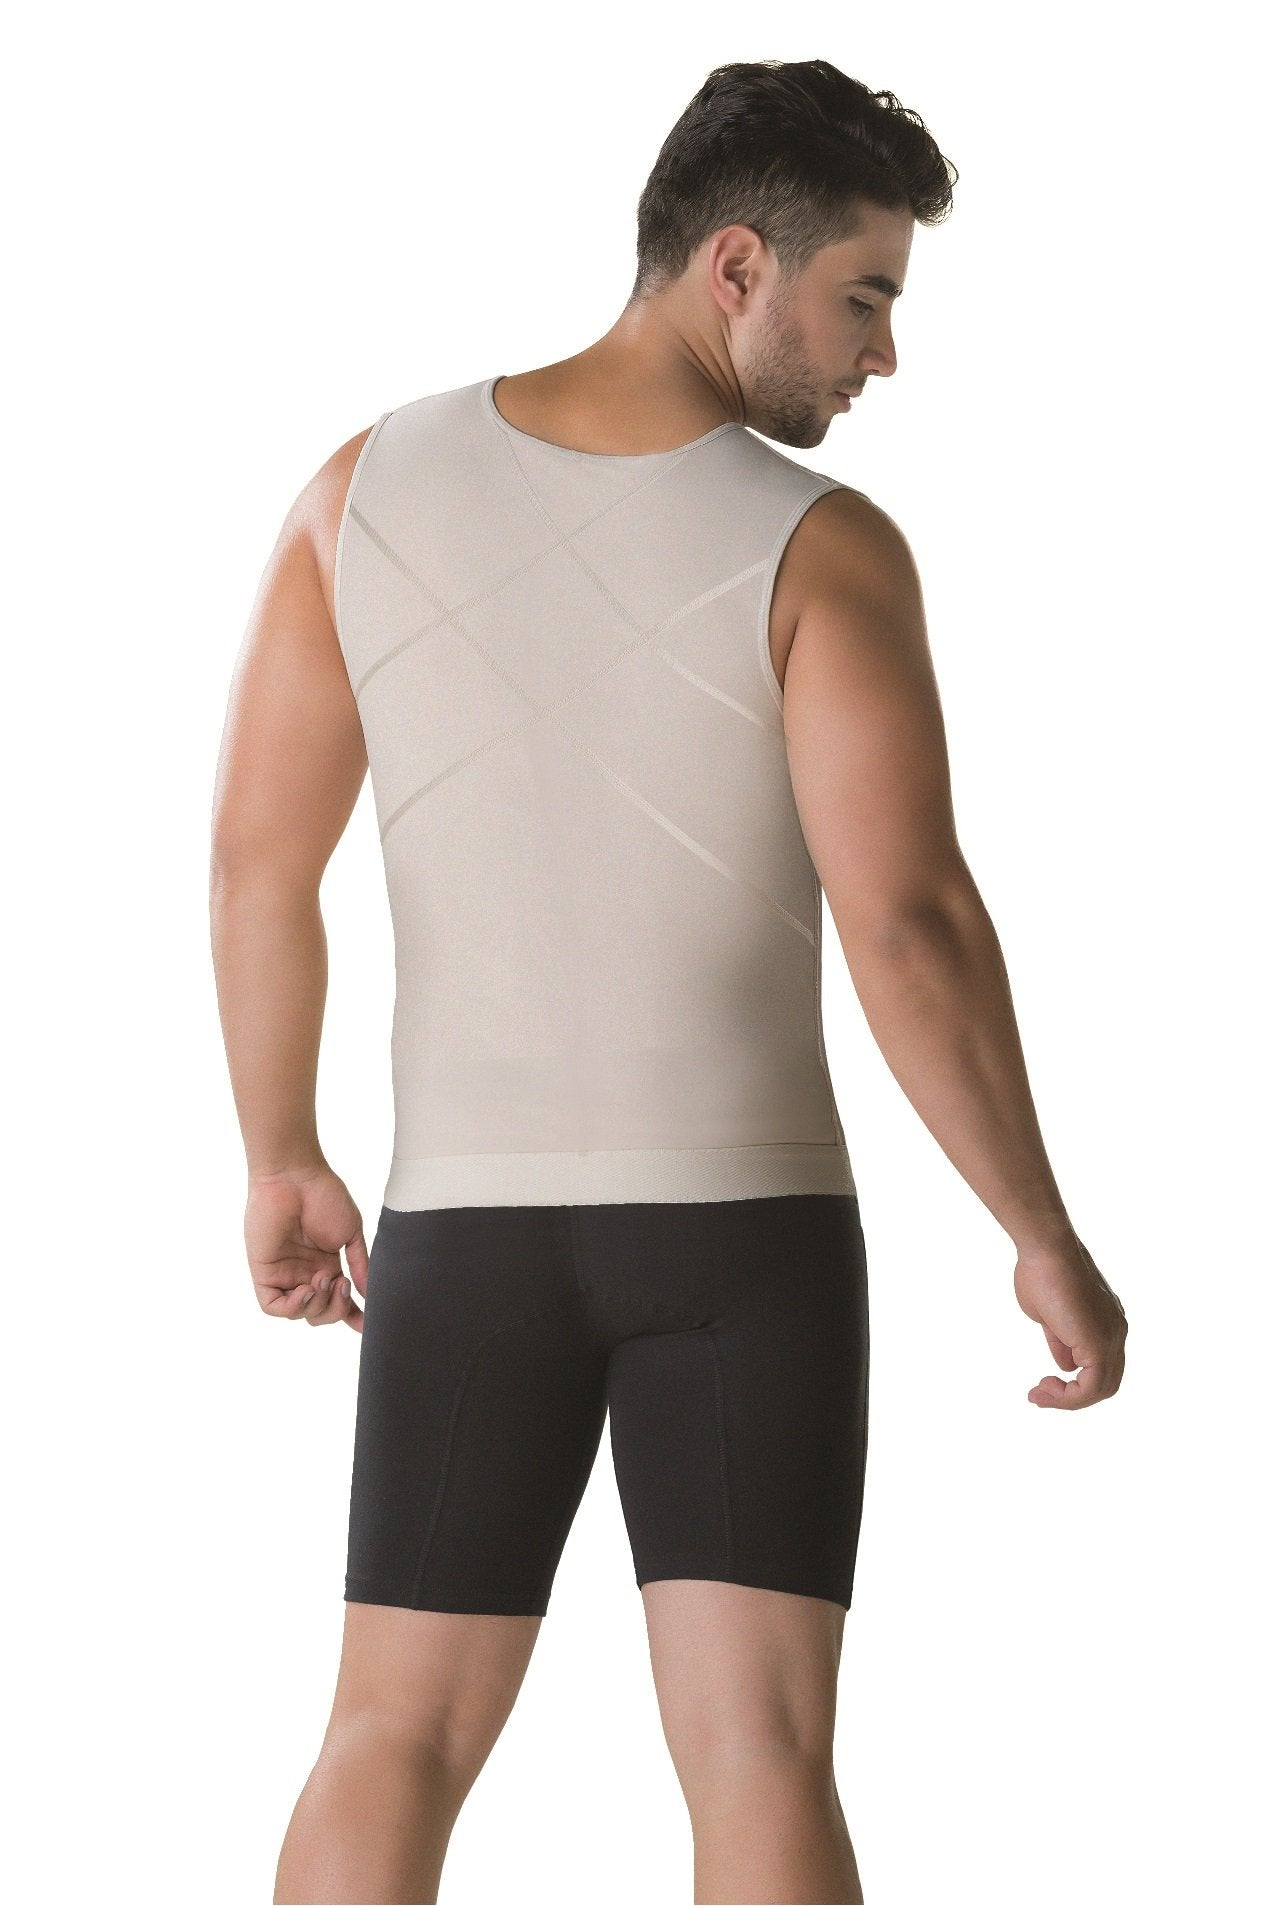 Men's Slimming Zipped Body Shaper Vest